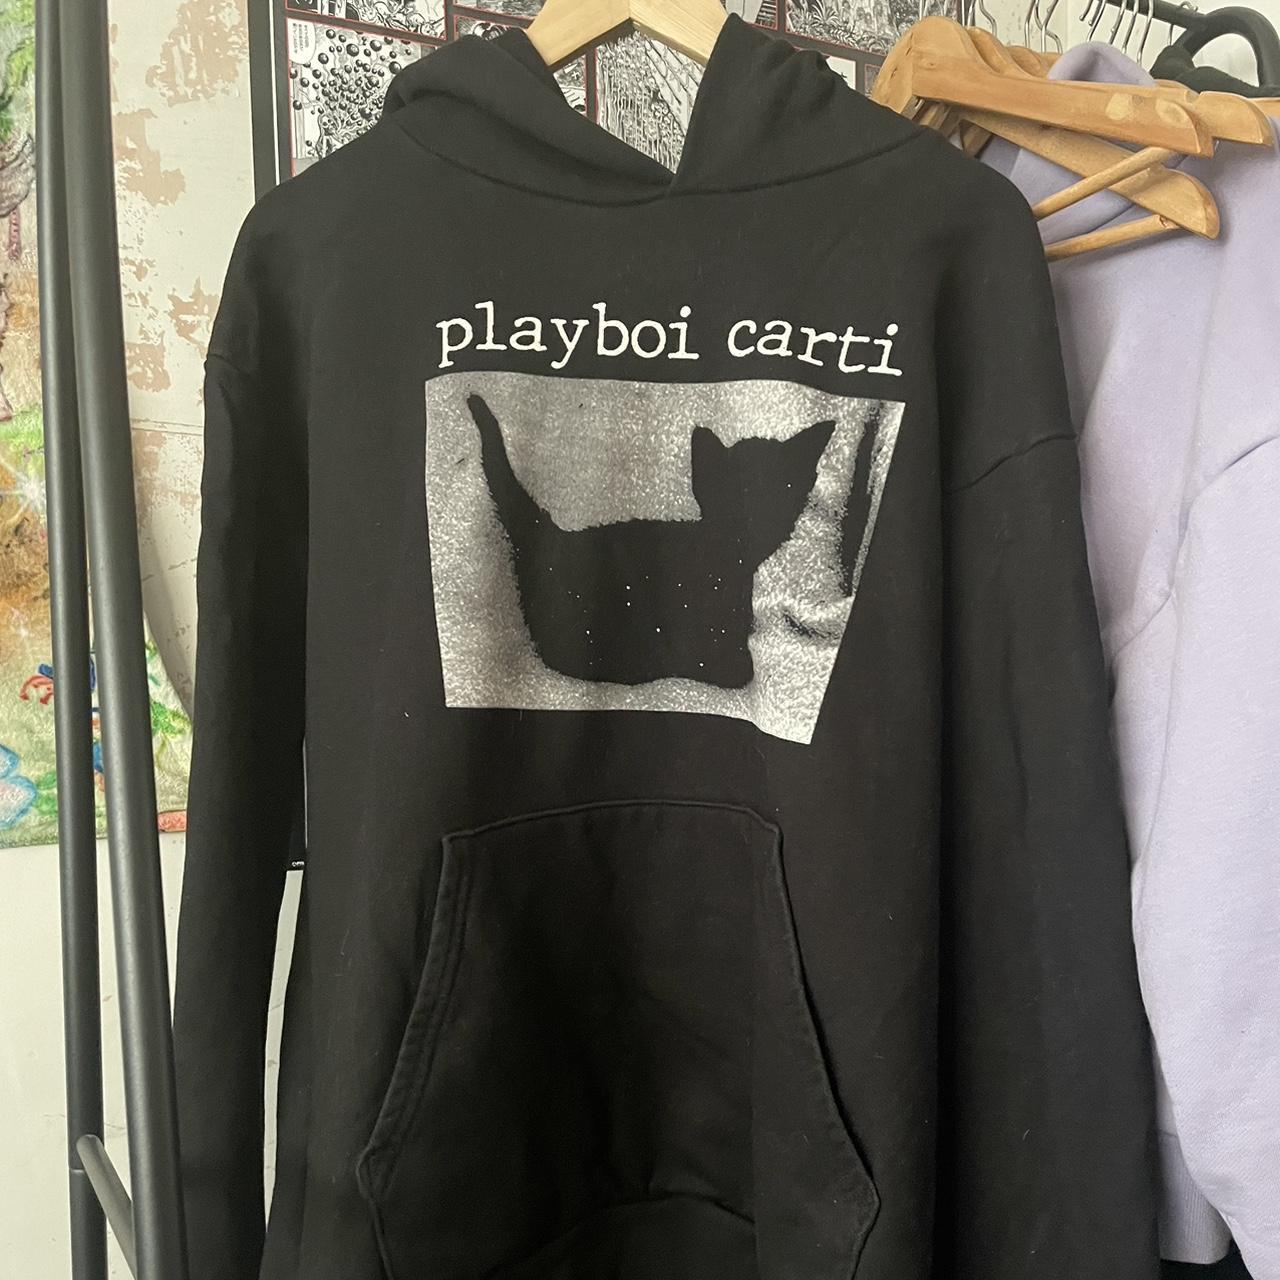 Playboi Carti official merch cat hoodie Silly little... - Depop